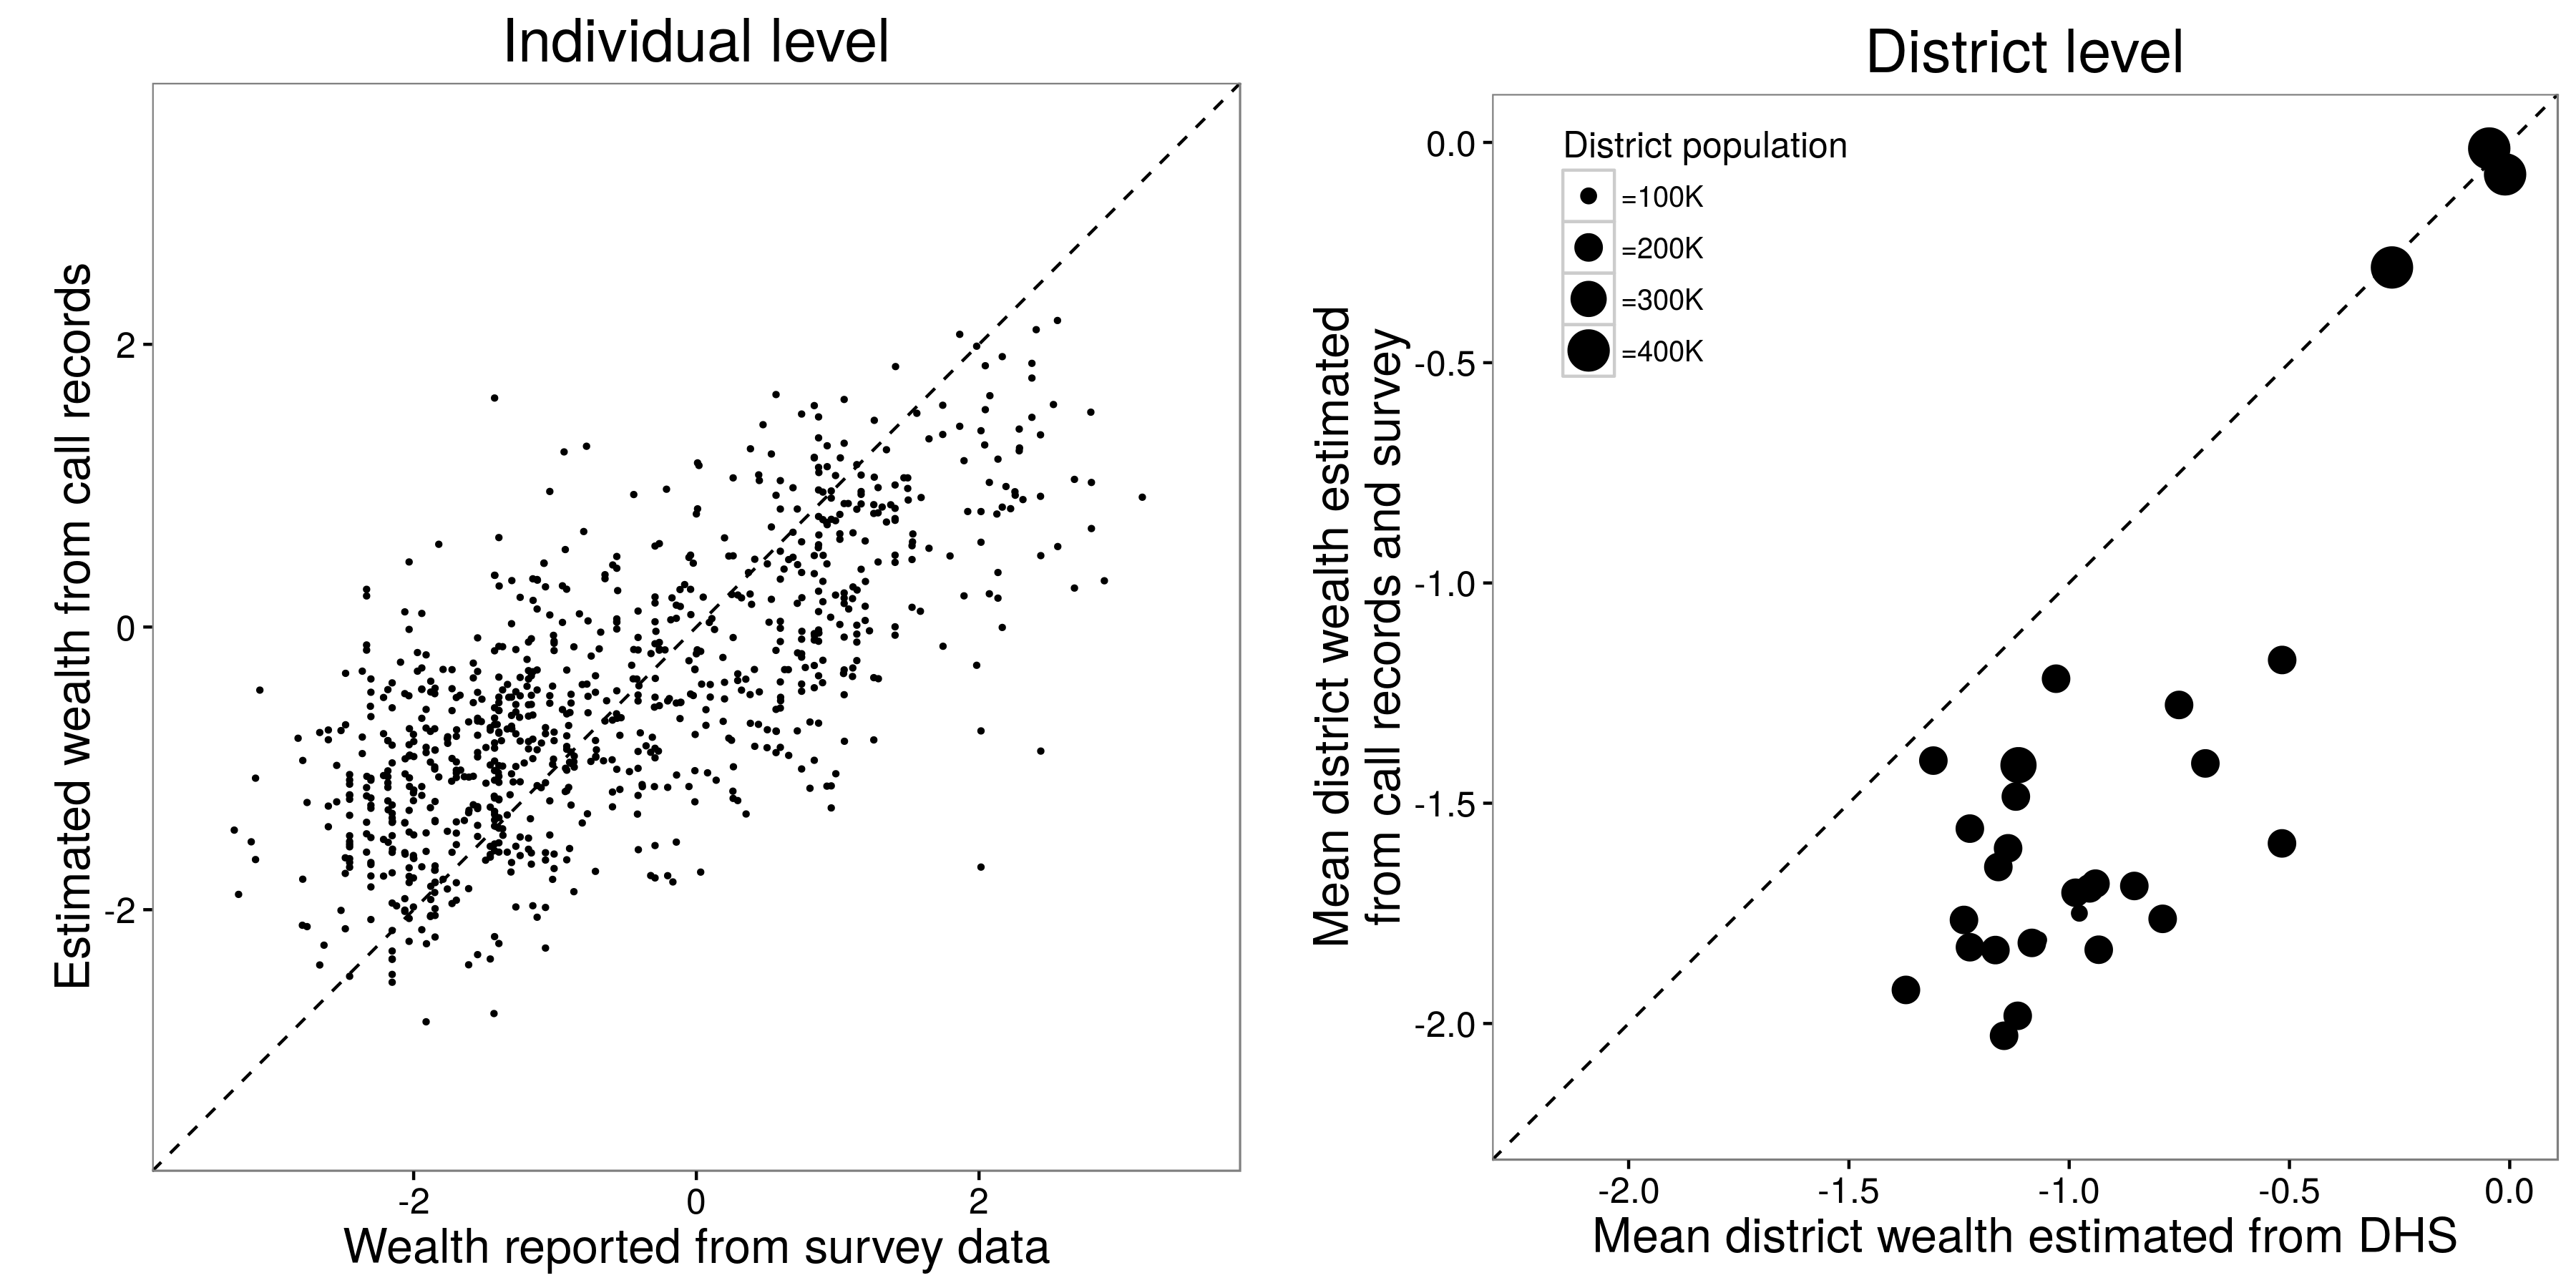 Joonis 3.17: Blumenstocki, Cadamuro ja On (2015) tulemused. Individuaalsel tasemel võisid teadlased teha mõistlikku tööd, et ennustada kellegi jõukust oma kõnekirjetest. Rwanda 30 linnaosa piirkondliku taseme rikkuse hinnangud, mis põhinesid rikkuse ja elukoha individuaalse tasandi hinnangul, olid sarnased demograafilise ja terviseuuringu tulemustega, mis on kulupõhine traditsiooniline uuring. Kohandatud Blumenstocki, Cadamuro ja On (2015) joonistel 1a ja 3c.